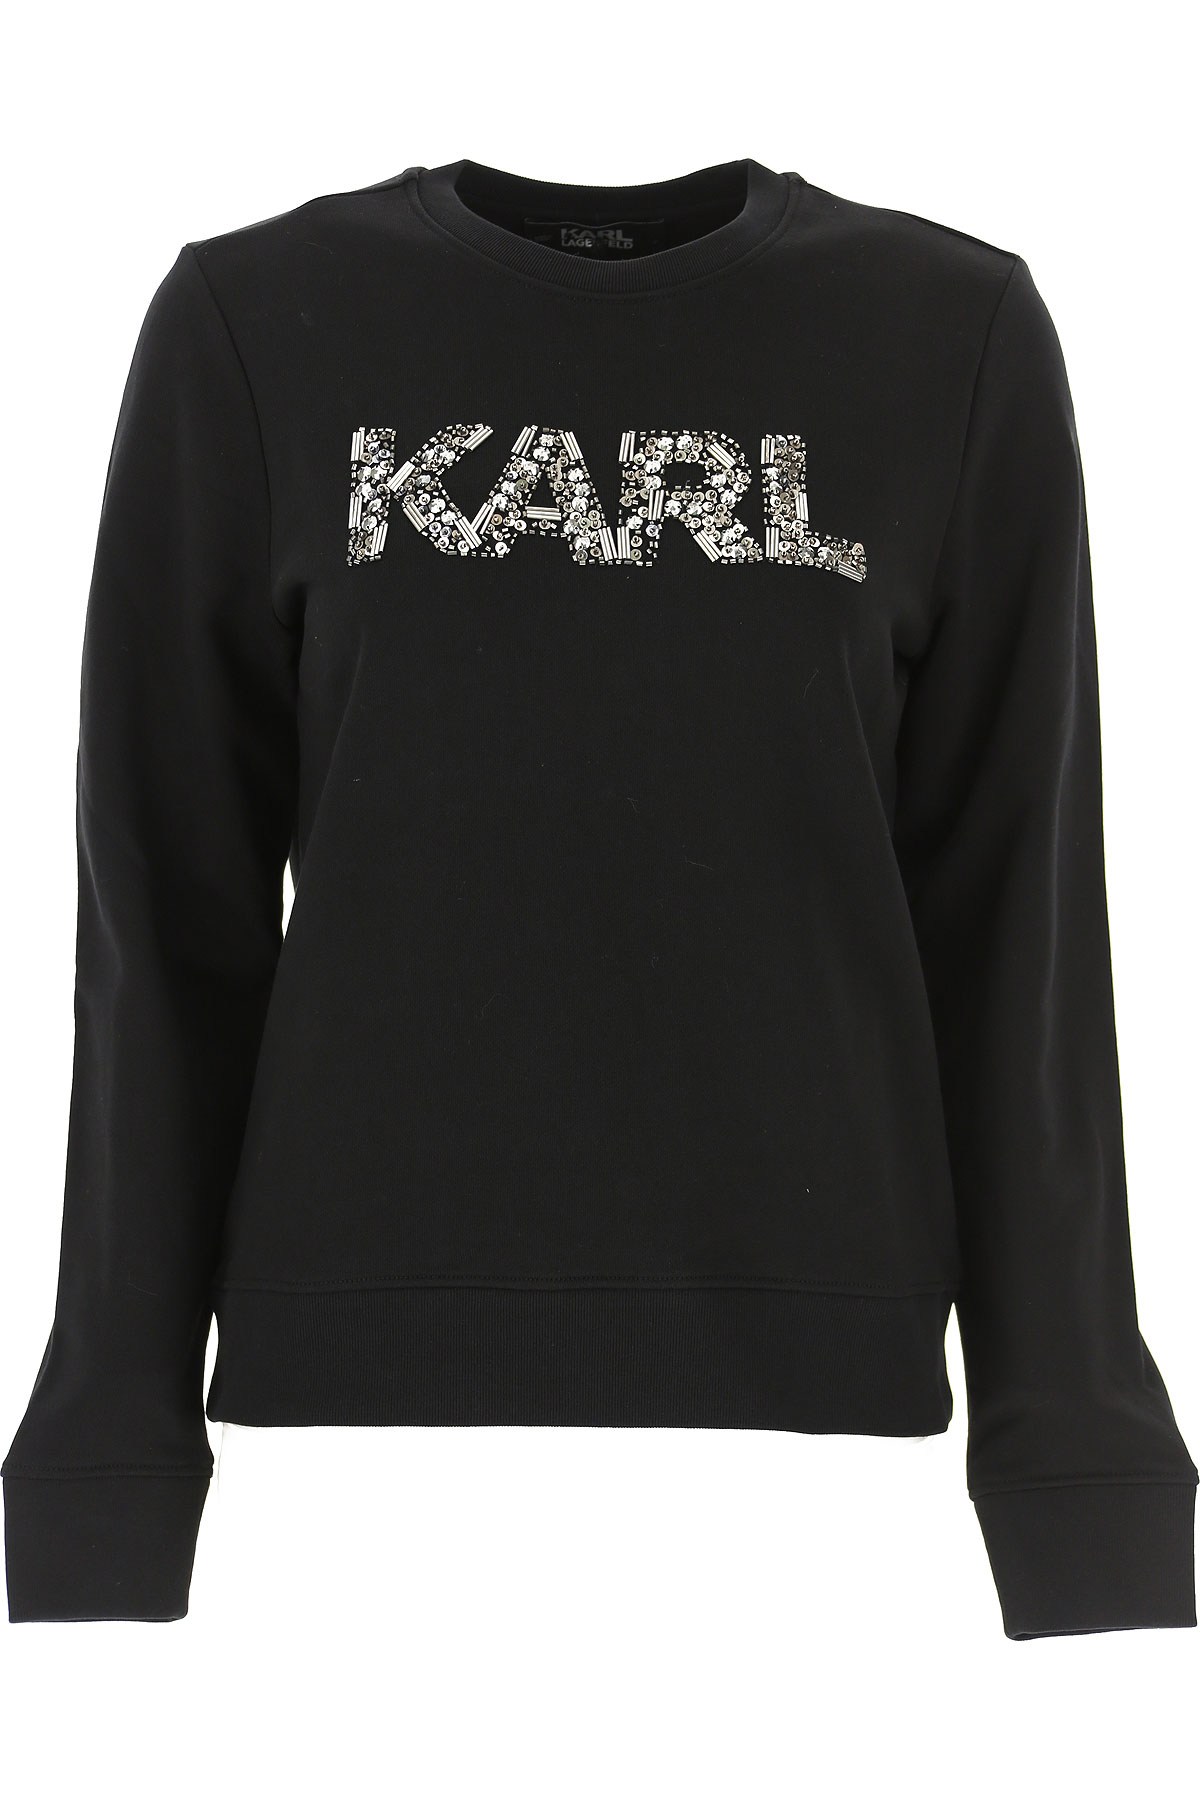 Karl Lagerfeld Sweatshirt für Damen, Kapuzenpulli, Hoodie, Sweats Günstig im Sale, Schwarz, Baumwolle, 2017, 40 44 M